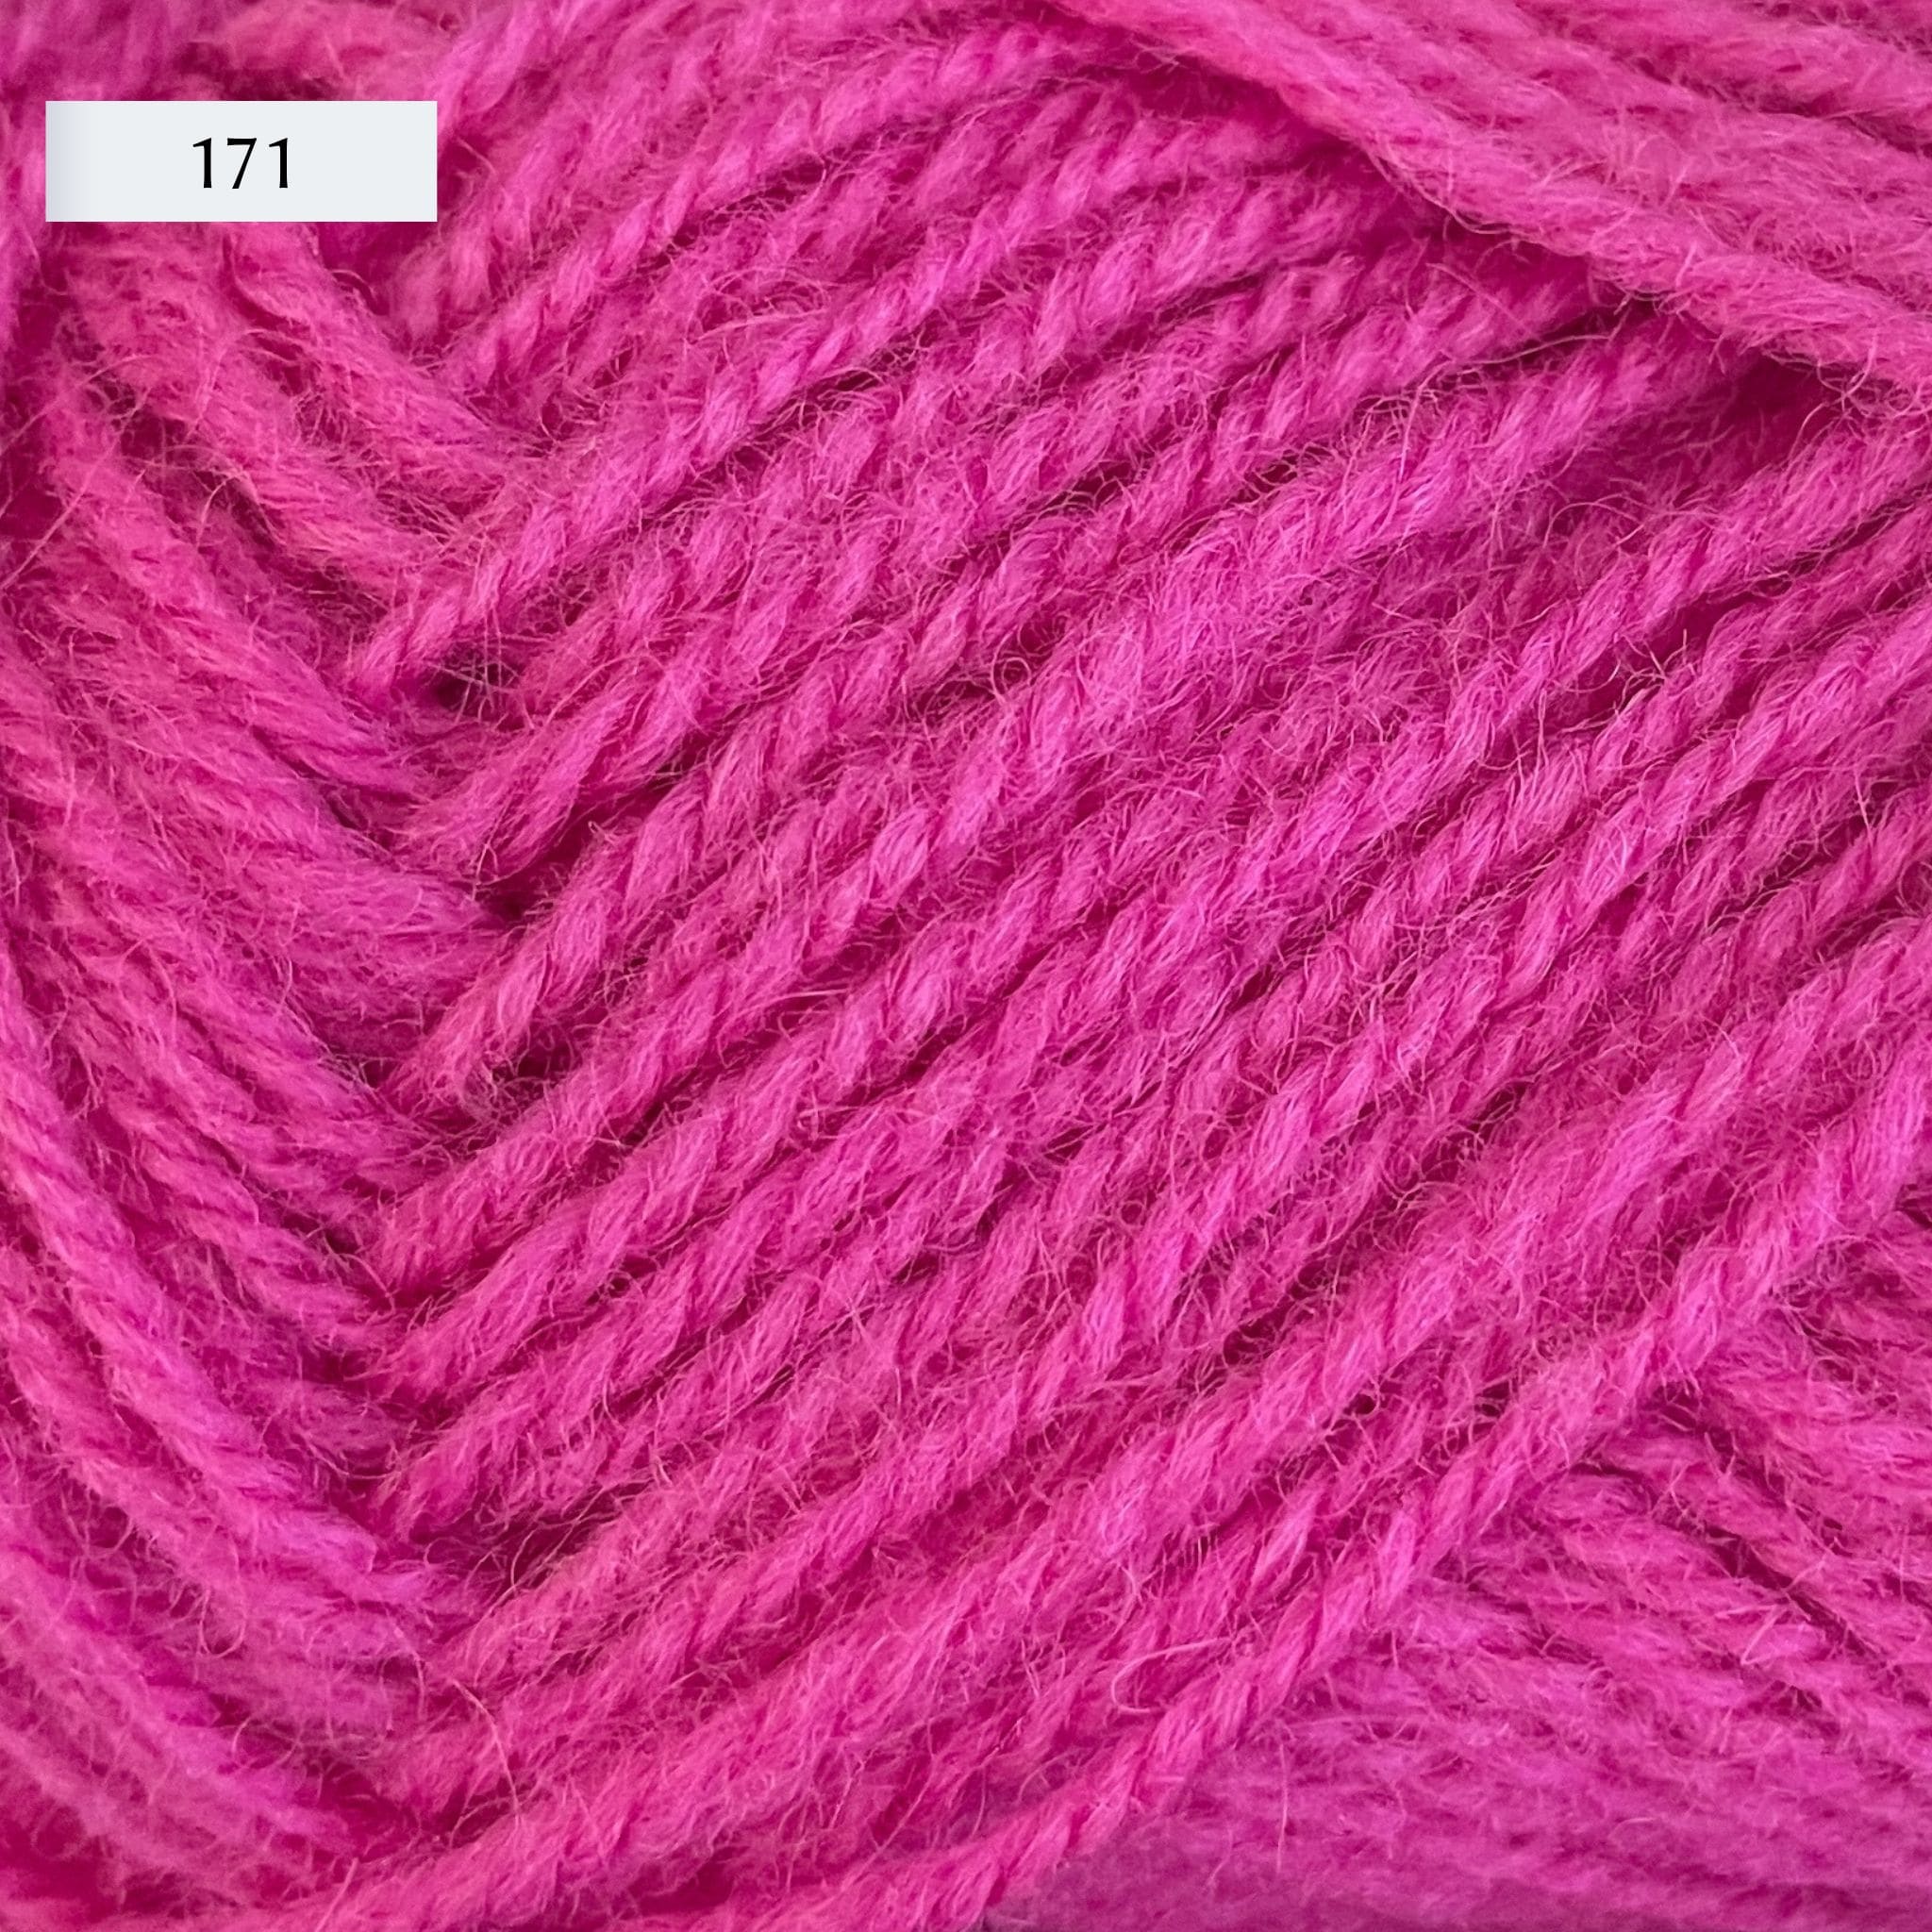 Rauma Strikkegarn, DK weight yarn, in color 171, hot pink